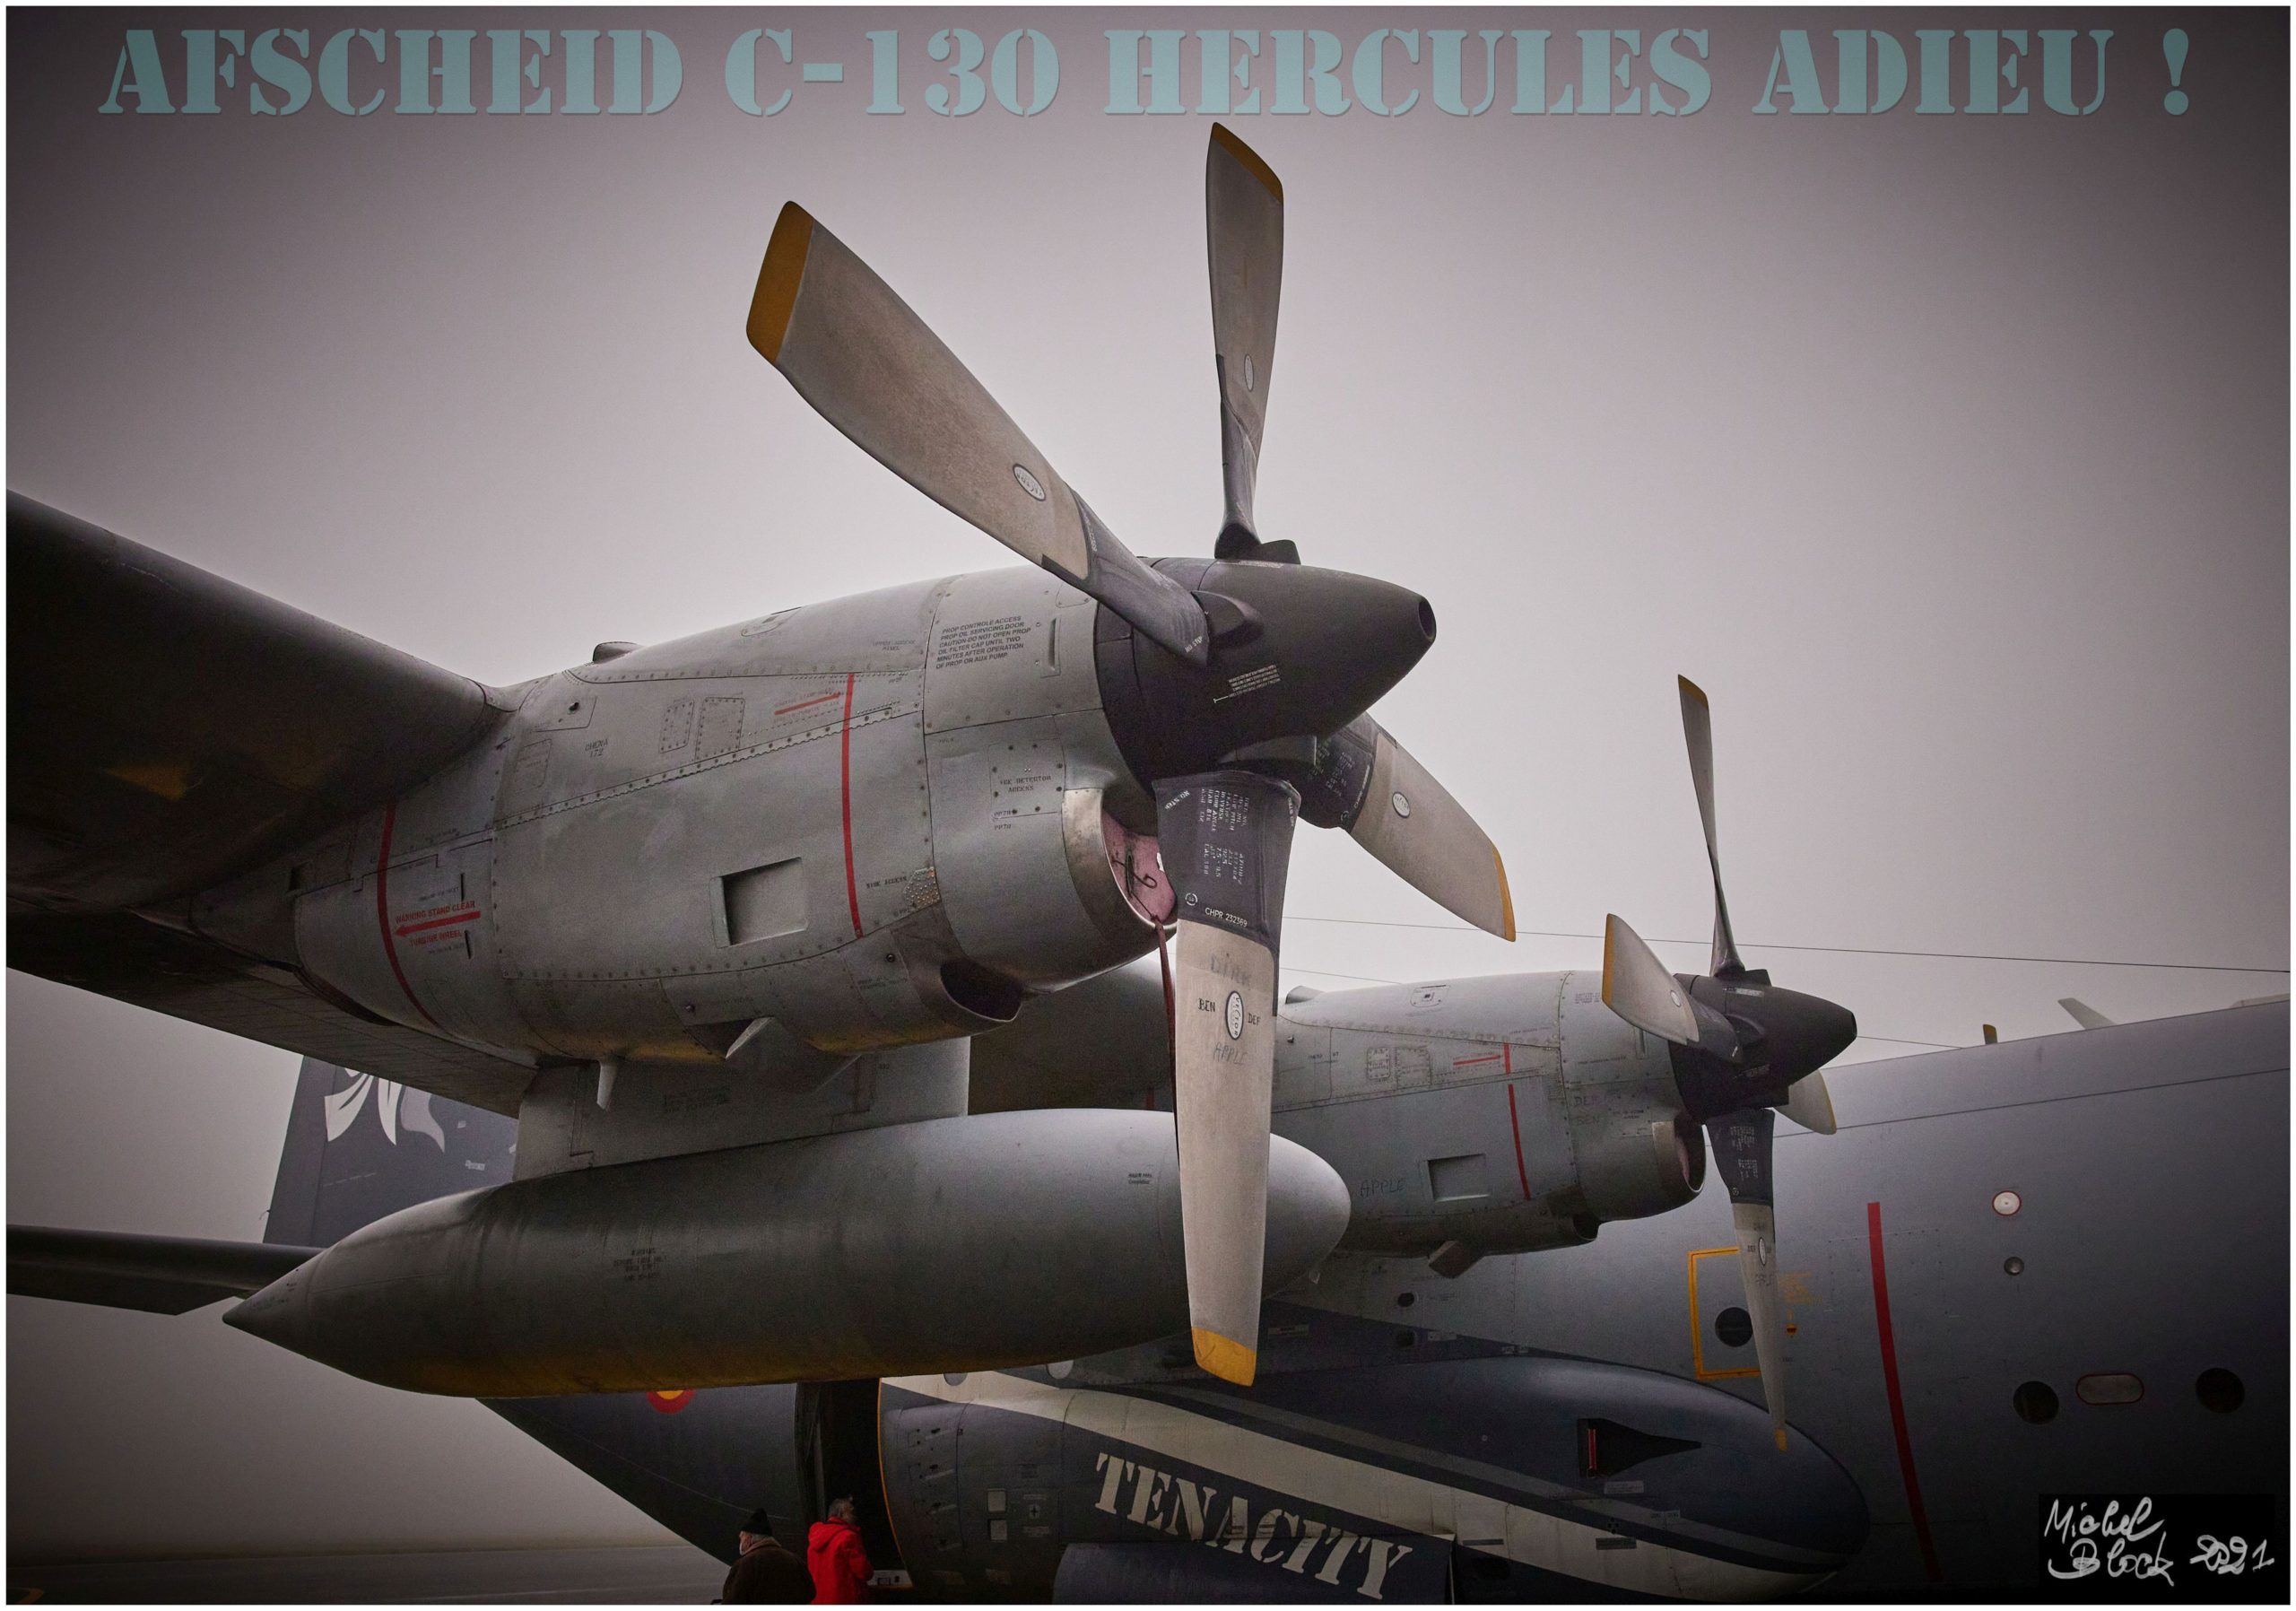 Afscheid C-130 Hercules Adieu !